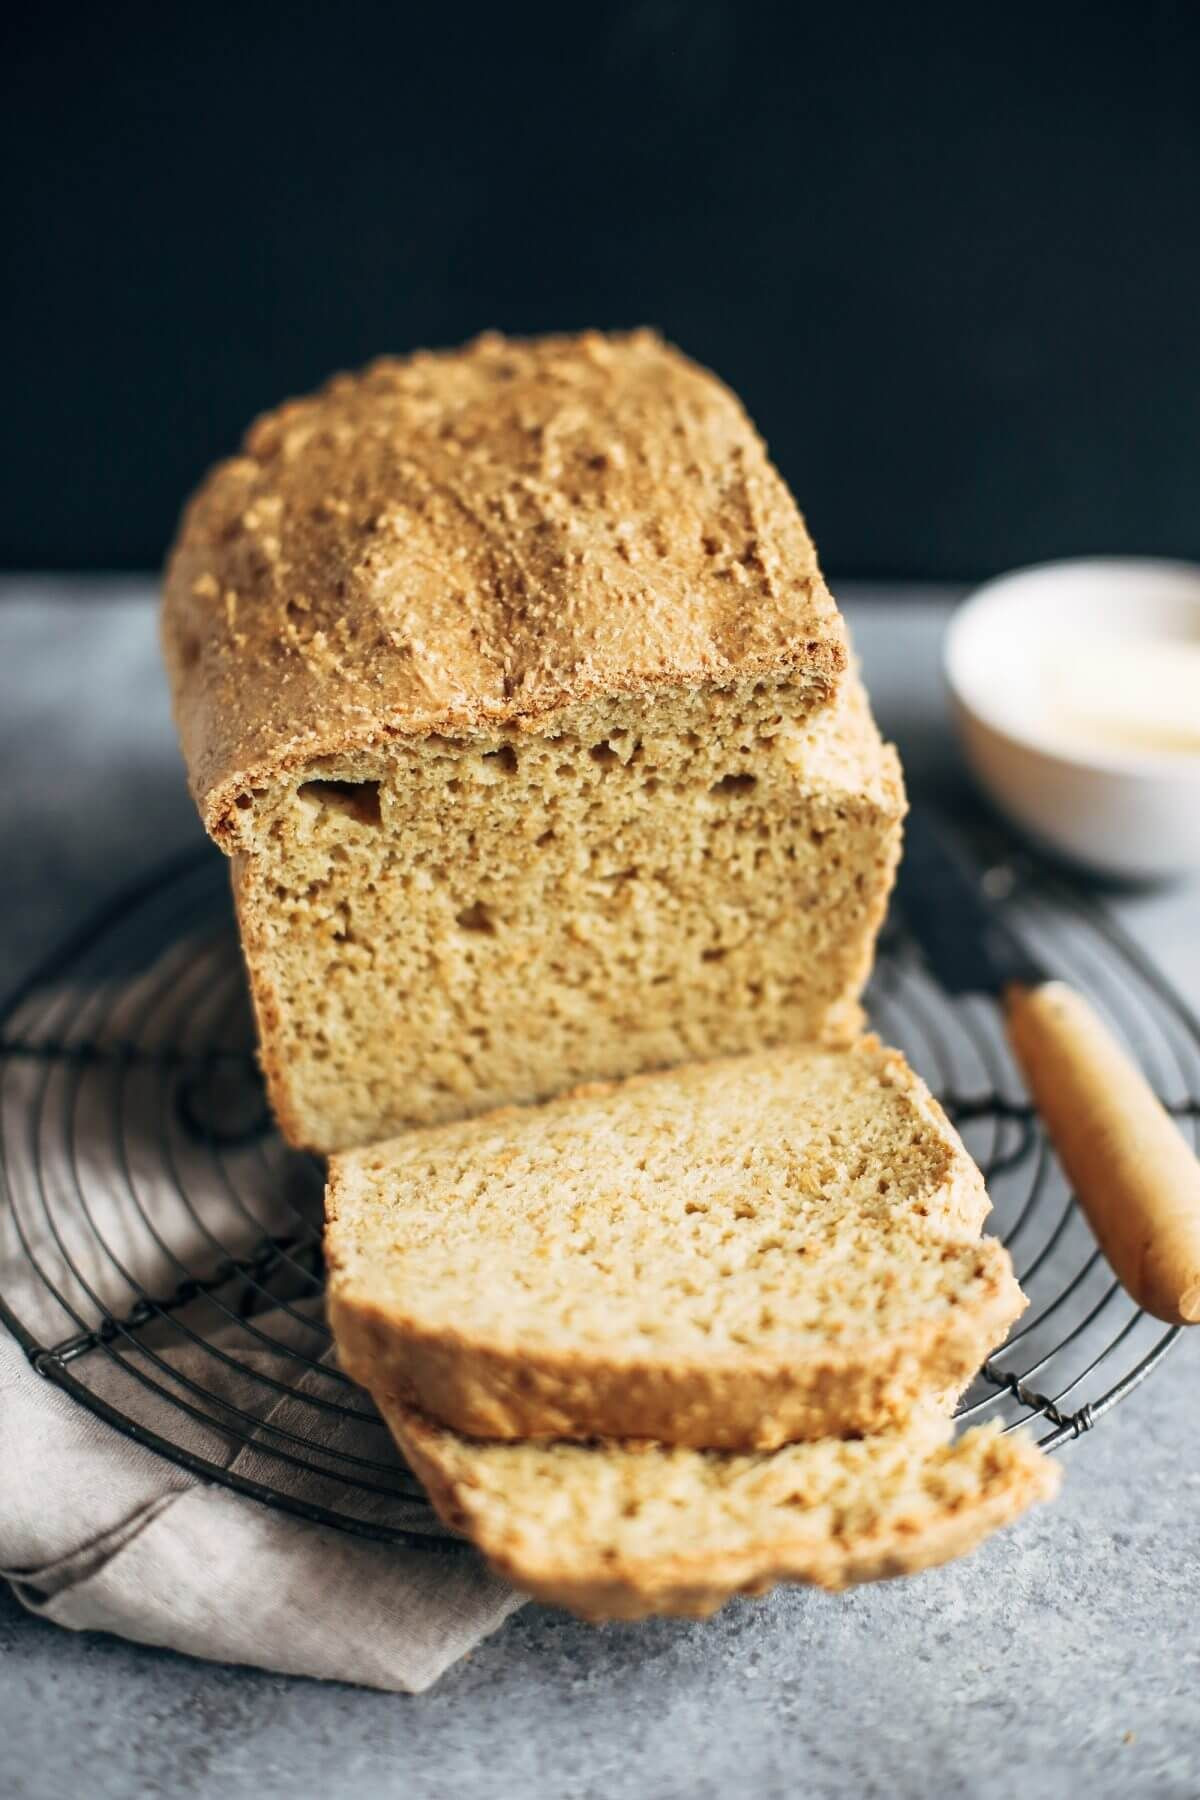 Homemade Keto Sandwich Bread
 Best Keto Gluten Free Bread Recipe in 2019